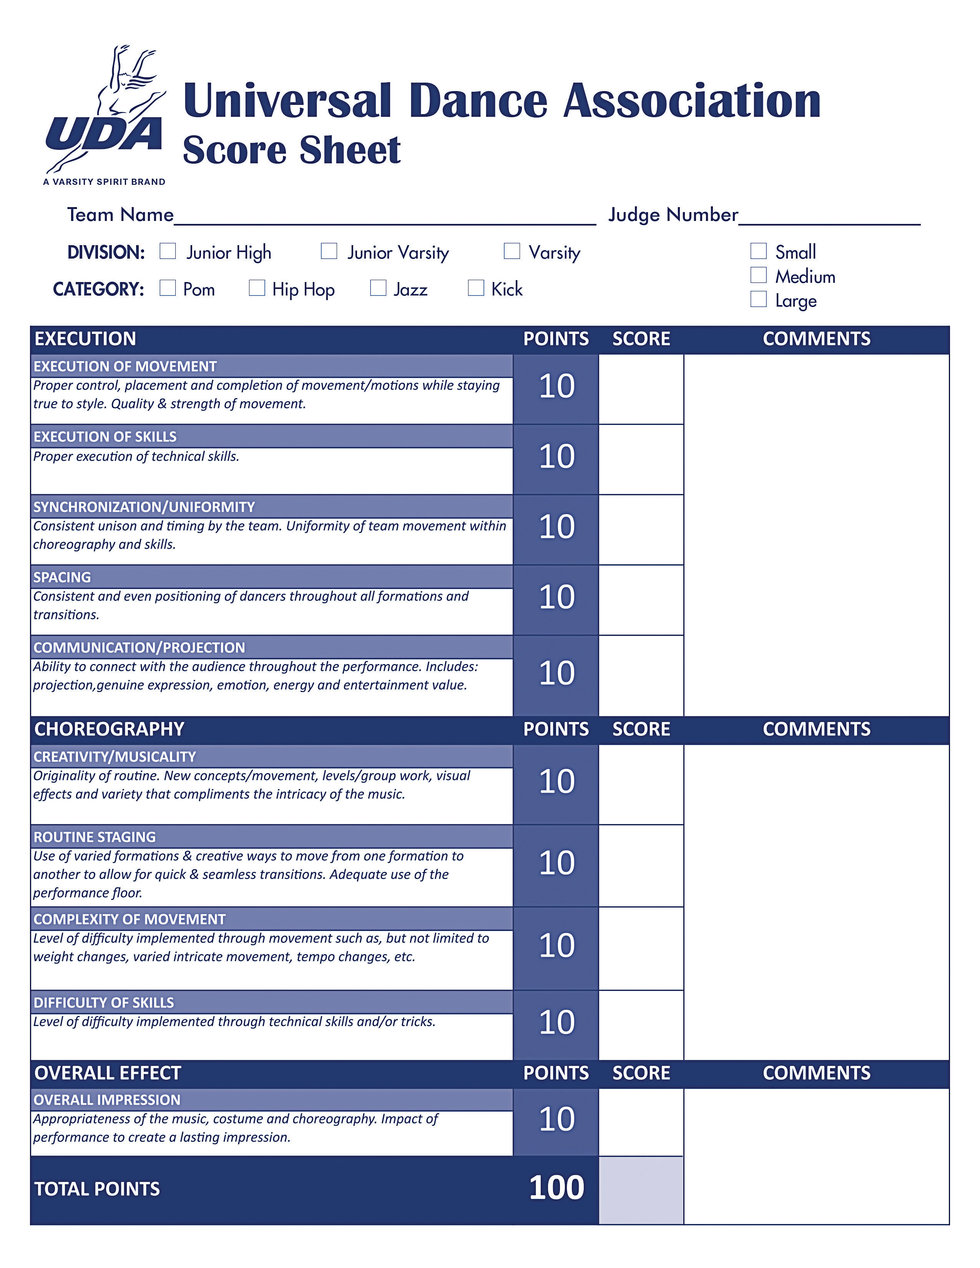 Dance Team Score Sheet Printable Etsy - vrogue.co